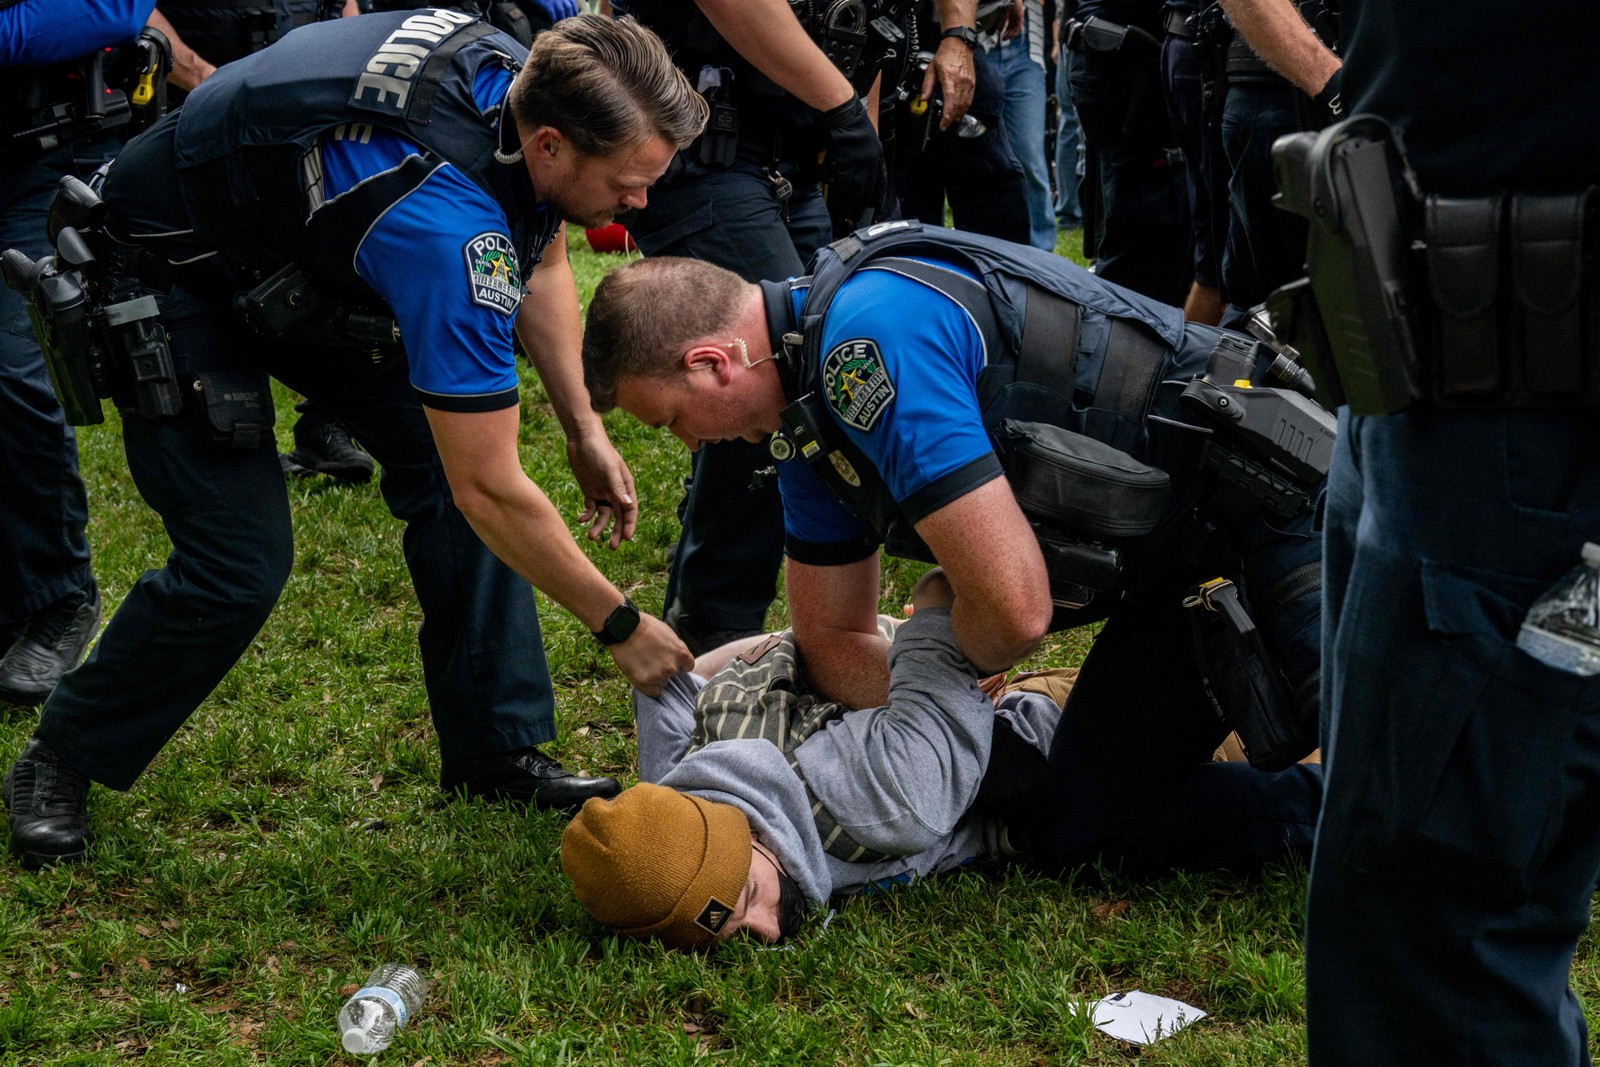 Um estudante é preso durante manifestação pró-palestina na Universidade do Texas, em Austin — Foto: Brandon Bell / GETTY IMAGES NORTH AMERICA / Getty Images via AFP